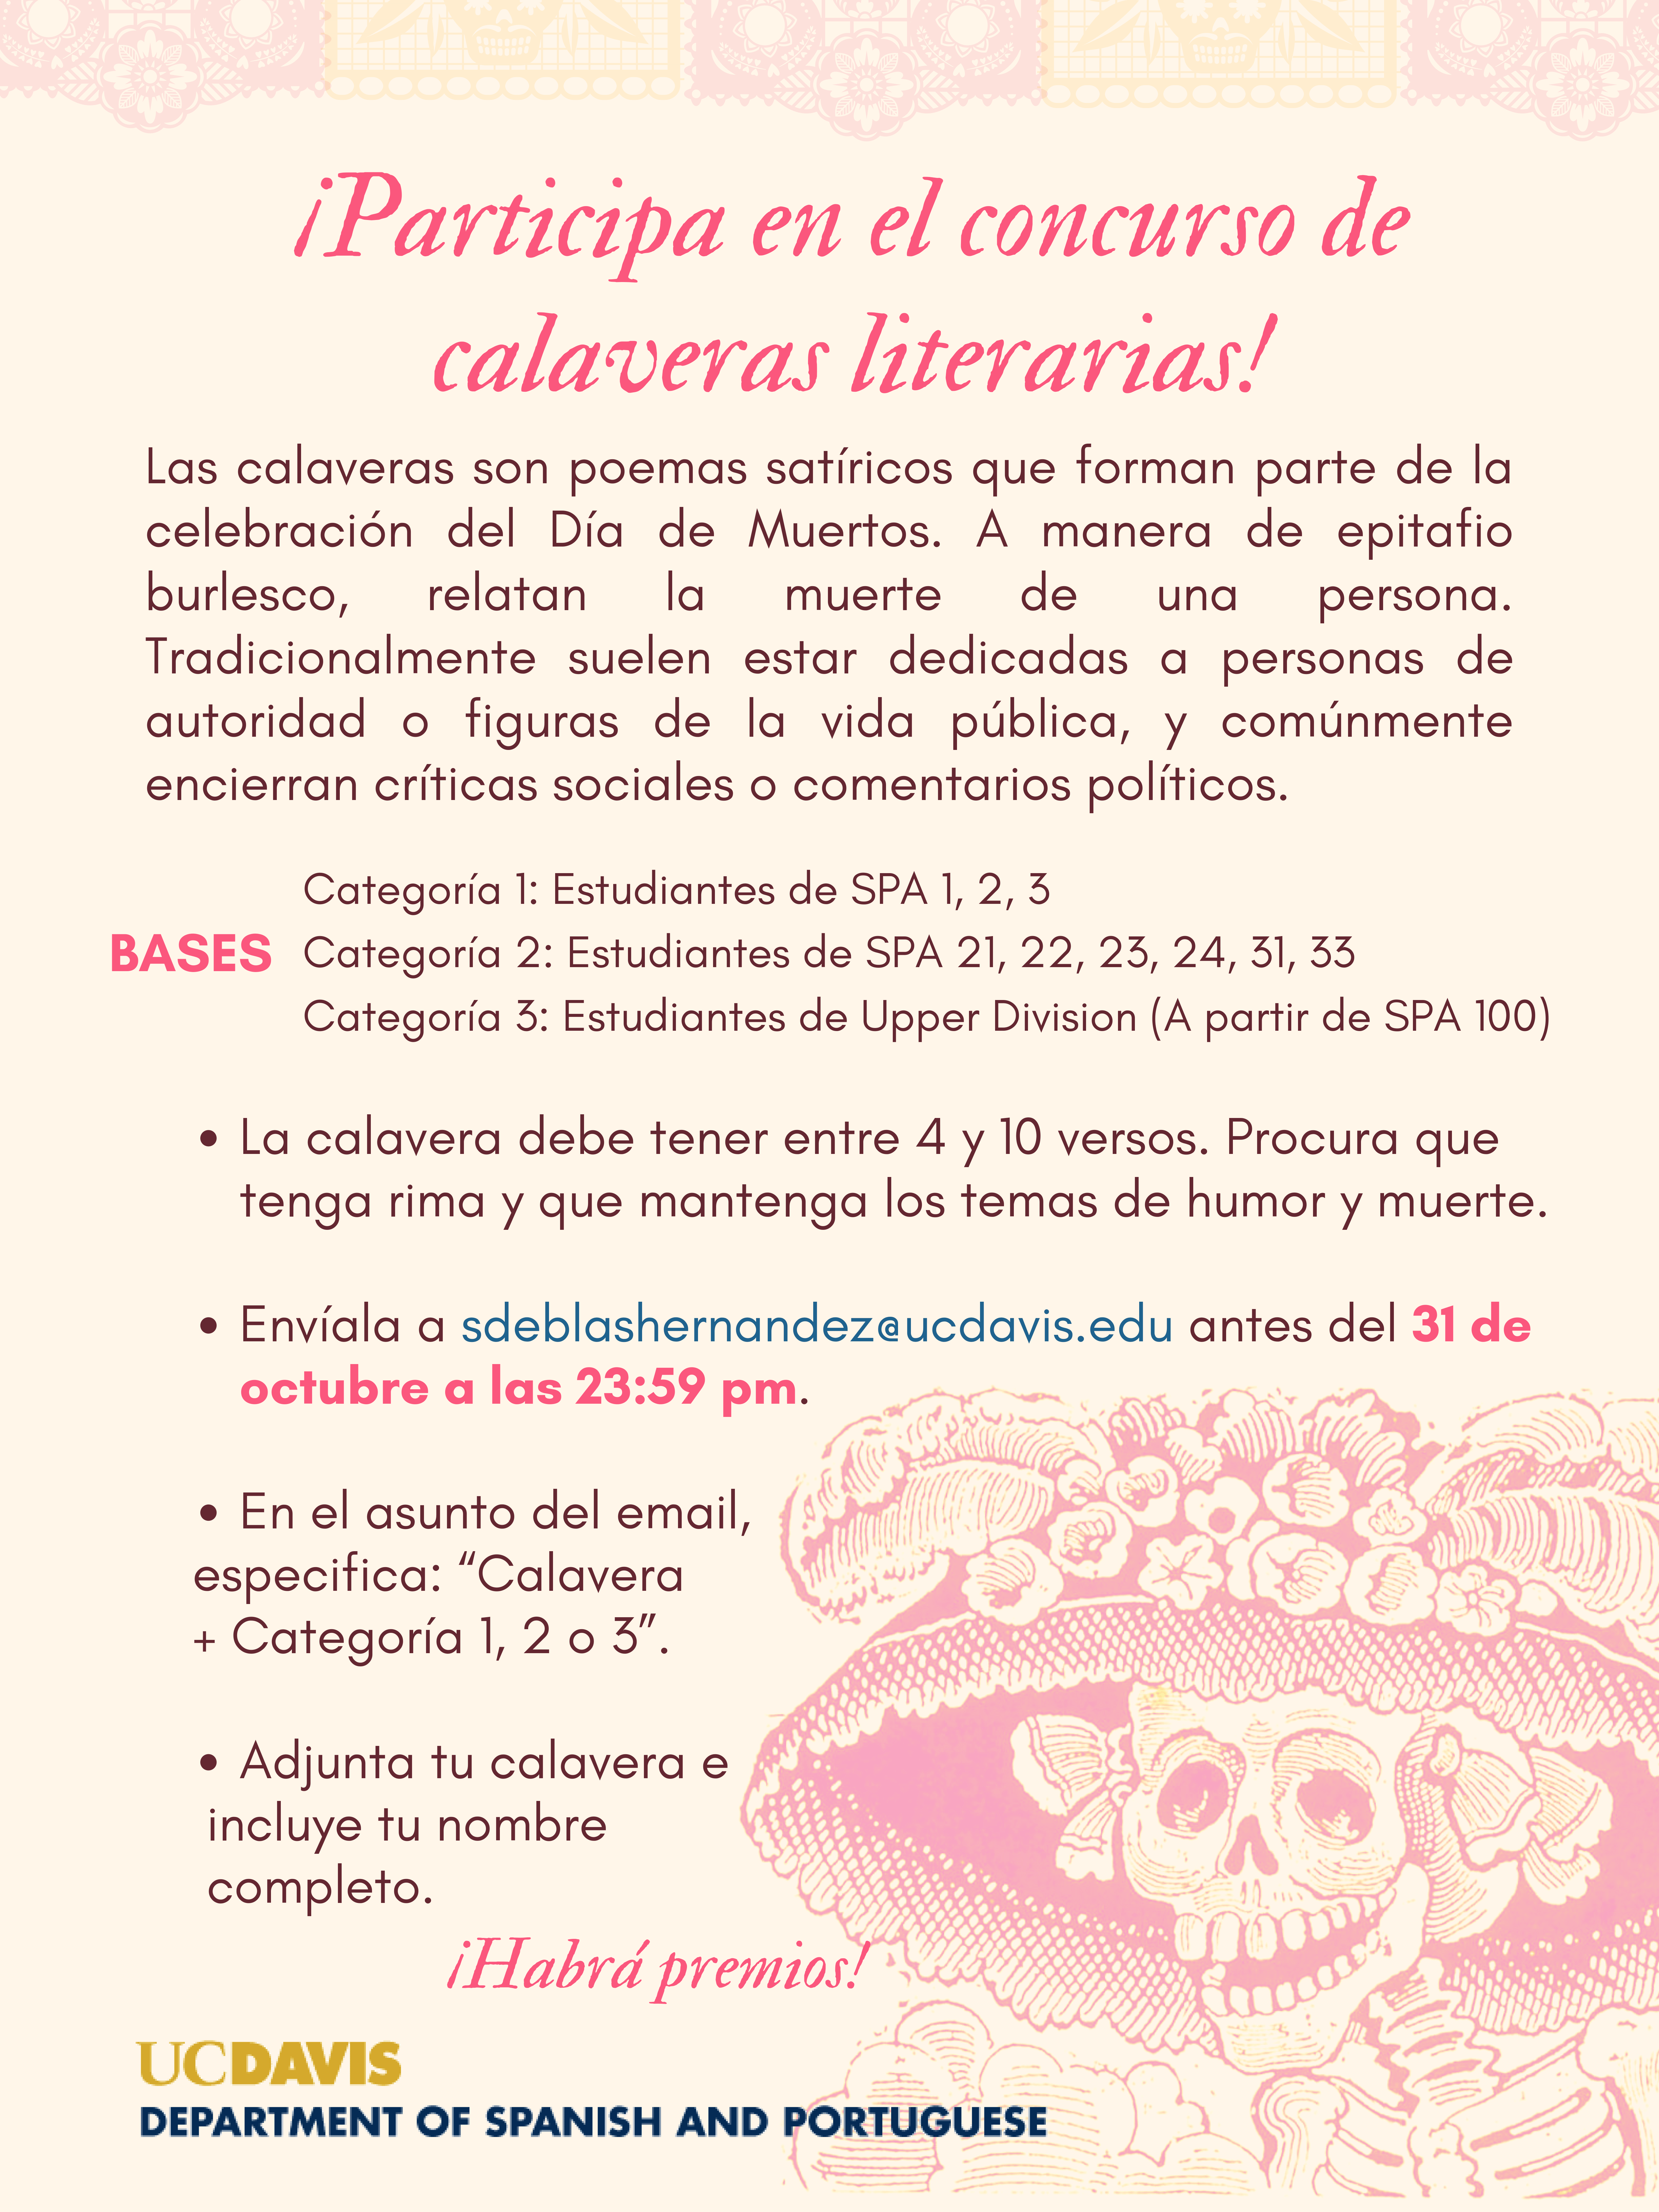 A flyer to participate in El Concurso de Calaveras Literias!